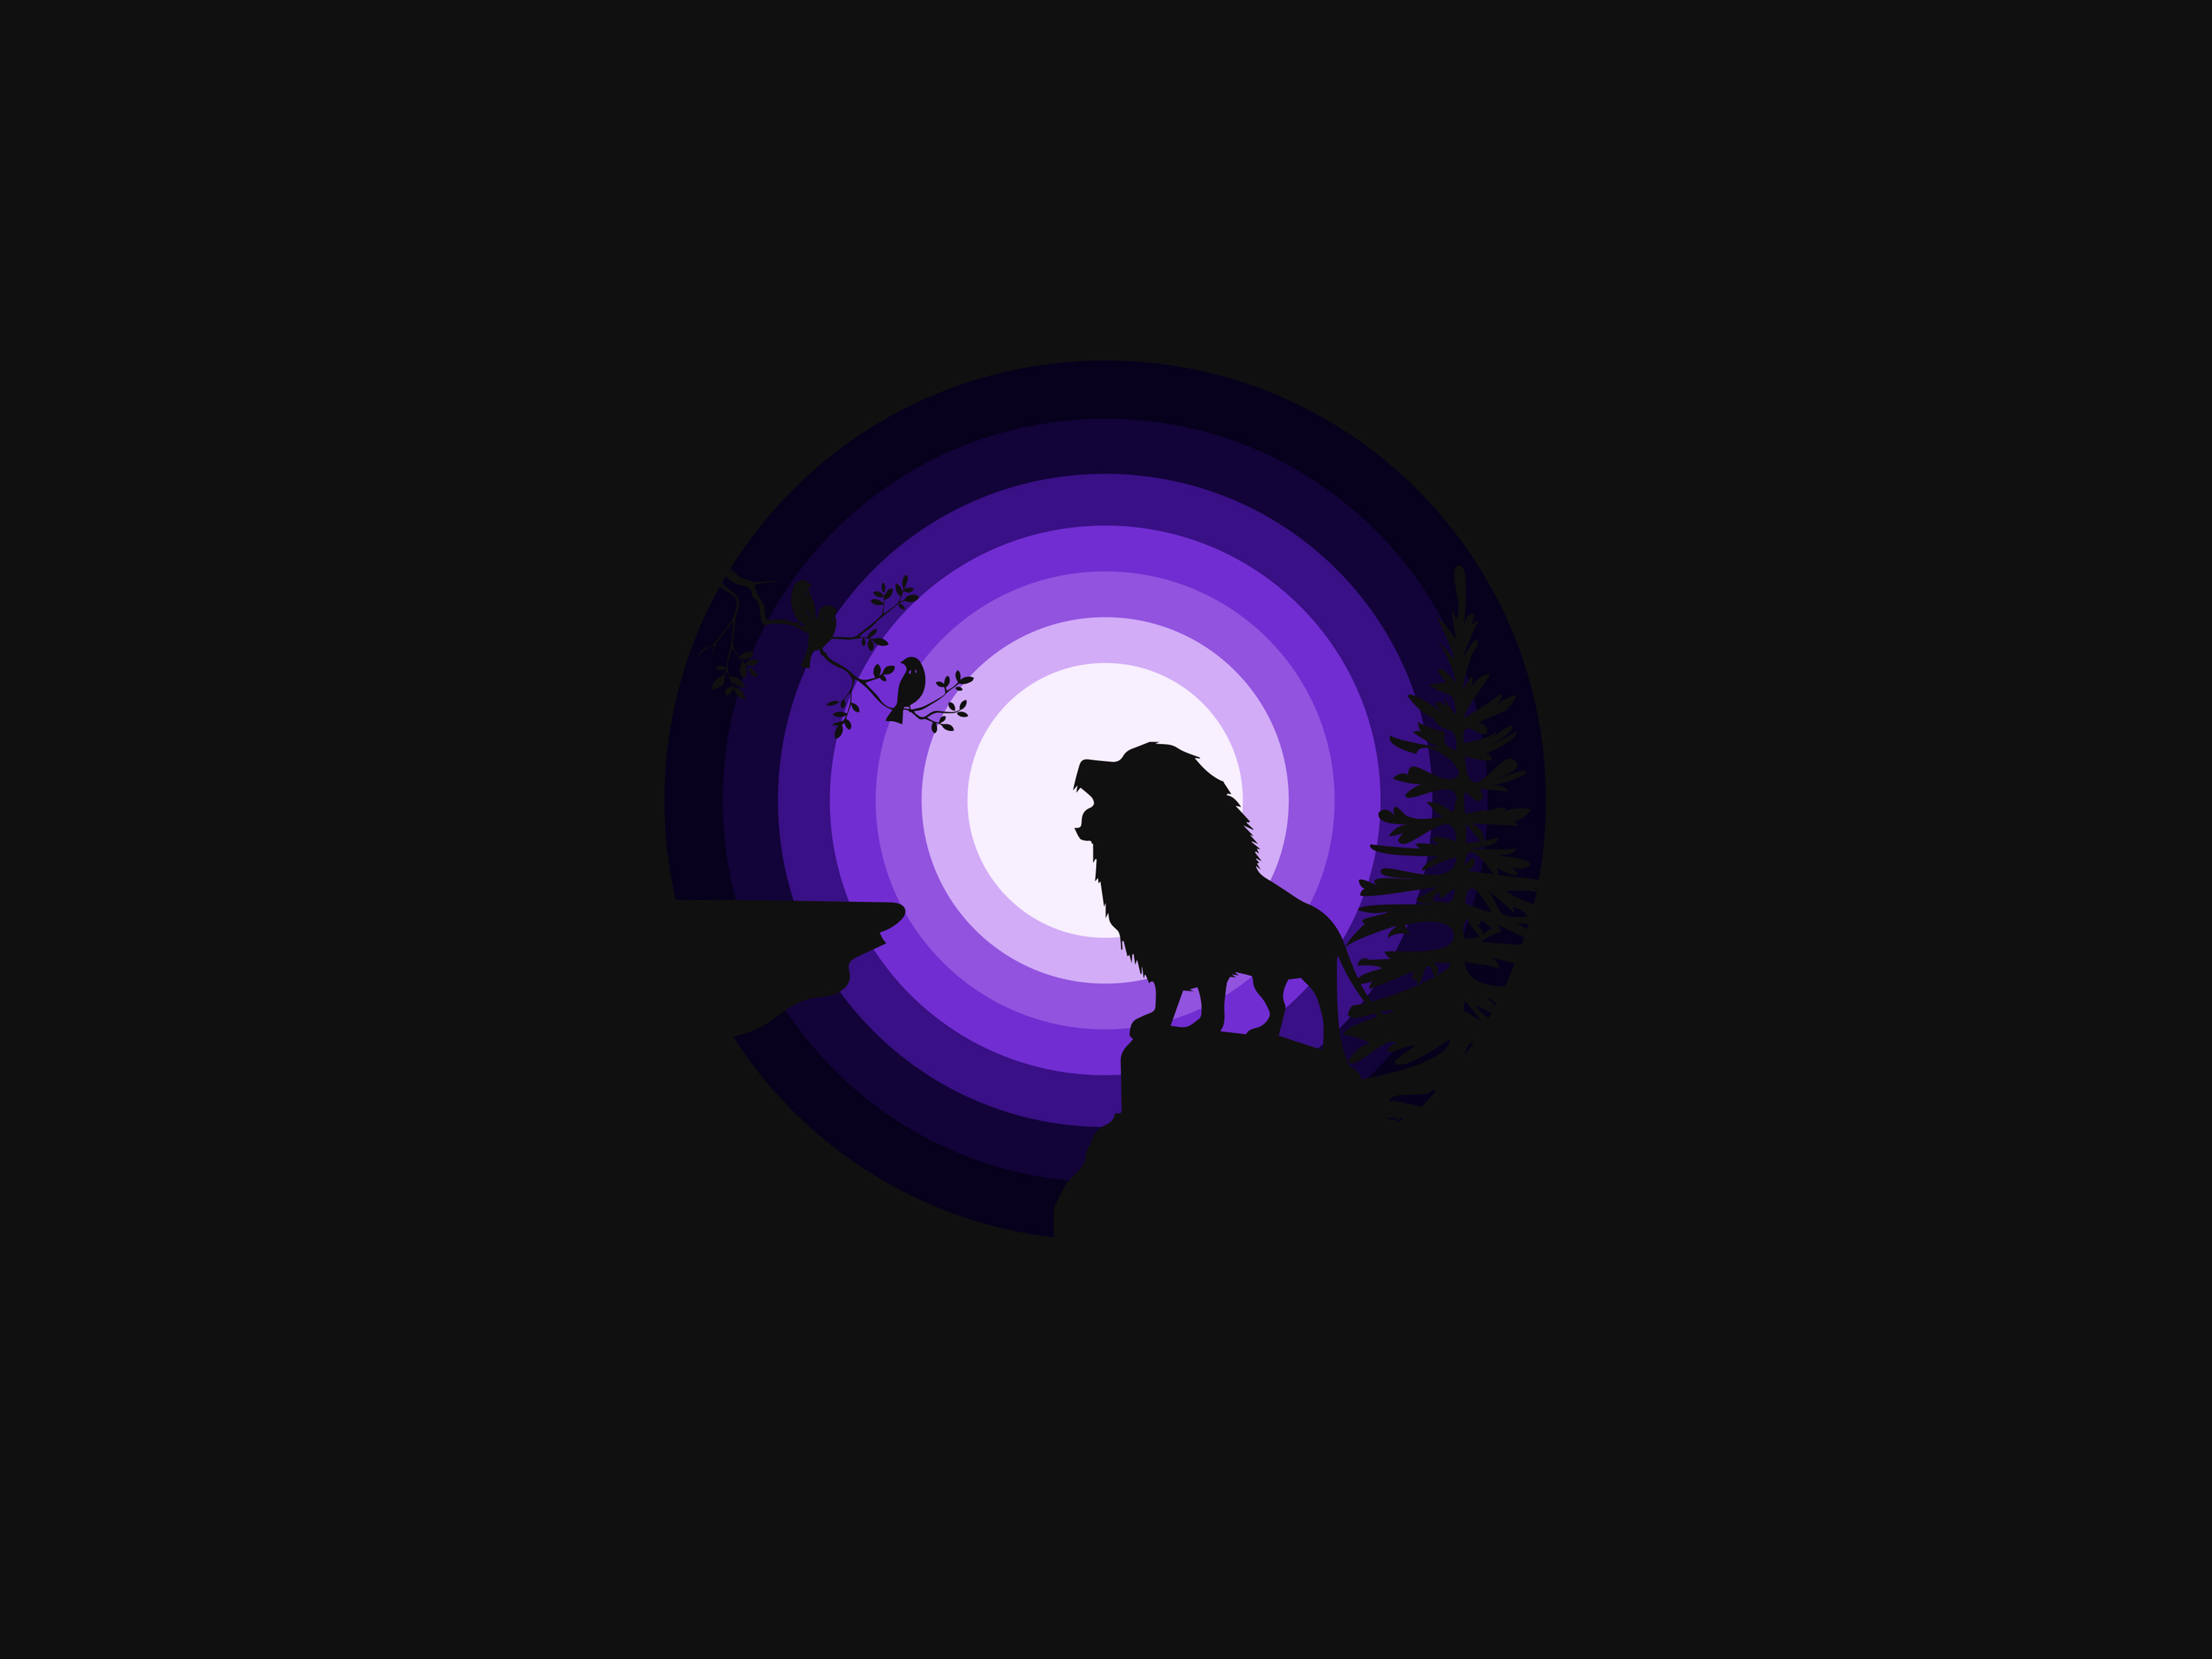 Lion Wallpaper 4K, Roaring, Silhouette, Moon, Night, Purple, Black Dark